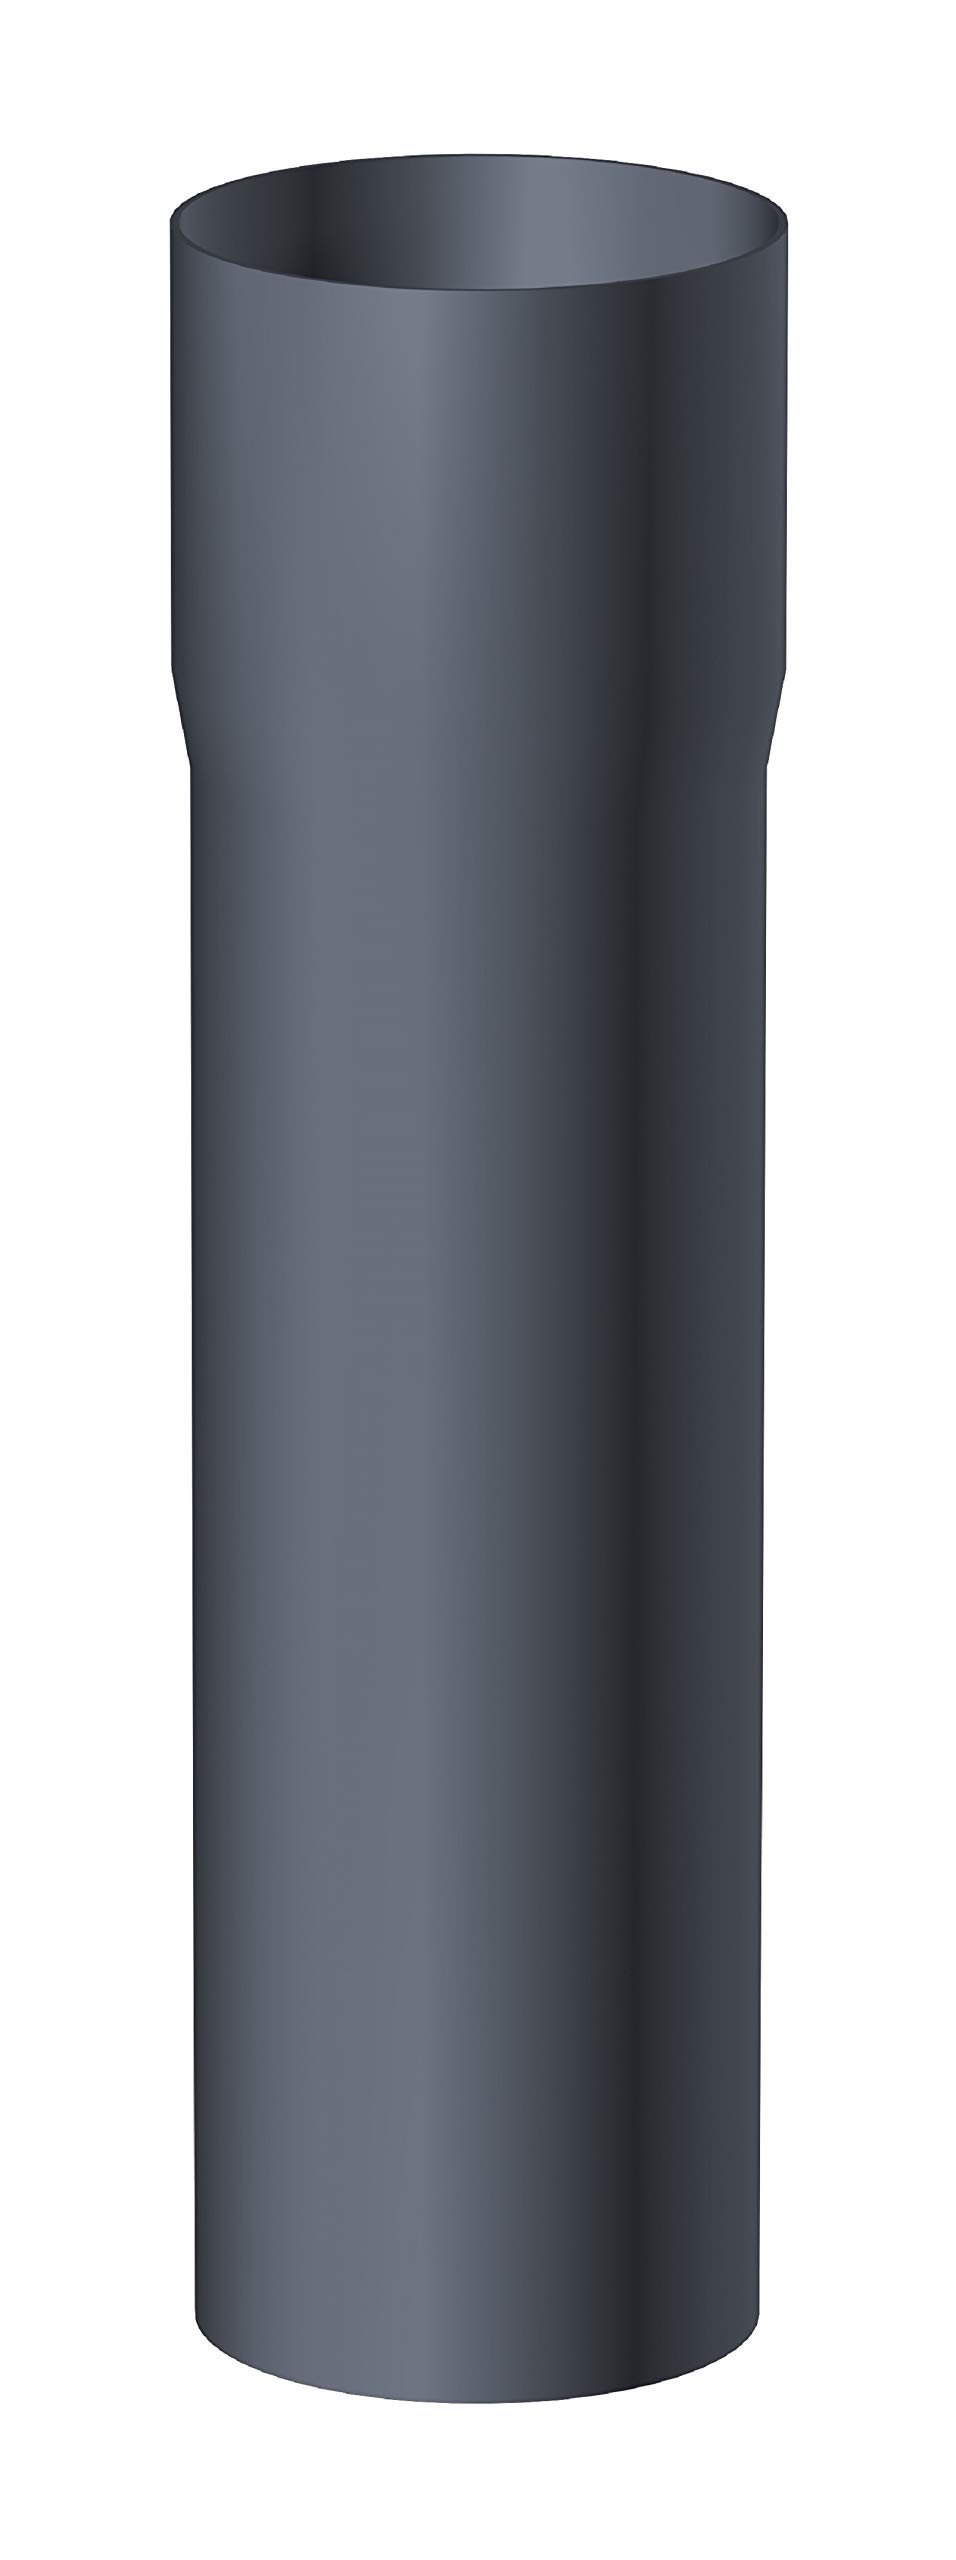 Trobak Fallrohr DN 100 mit Muffe Länge 2 Meter Aluminium anthrazit für Dachrinnensystem NW 150 (333)